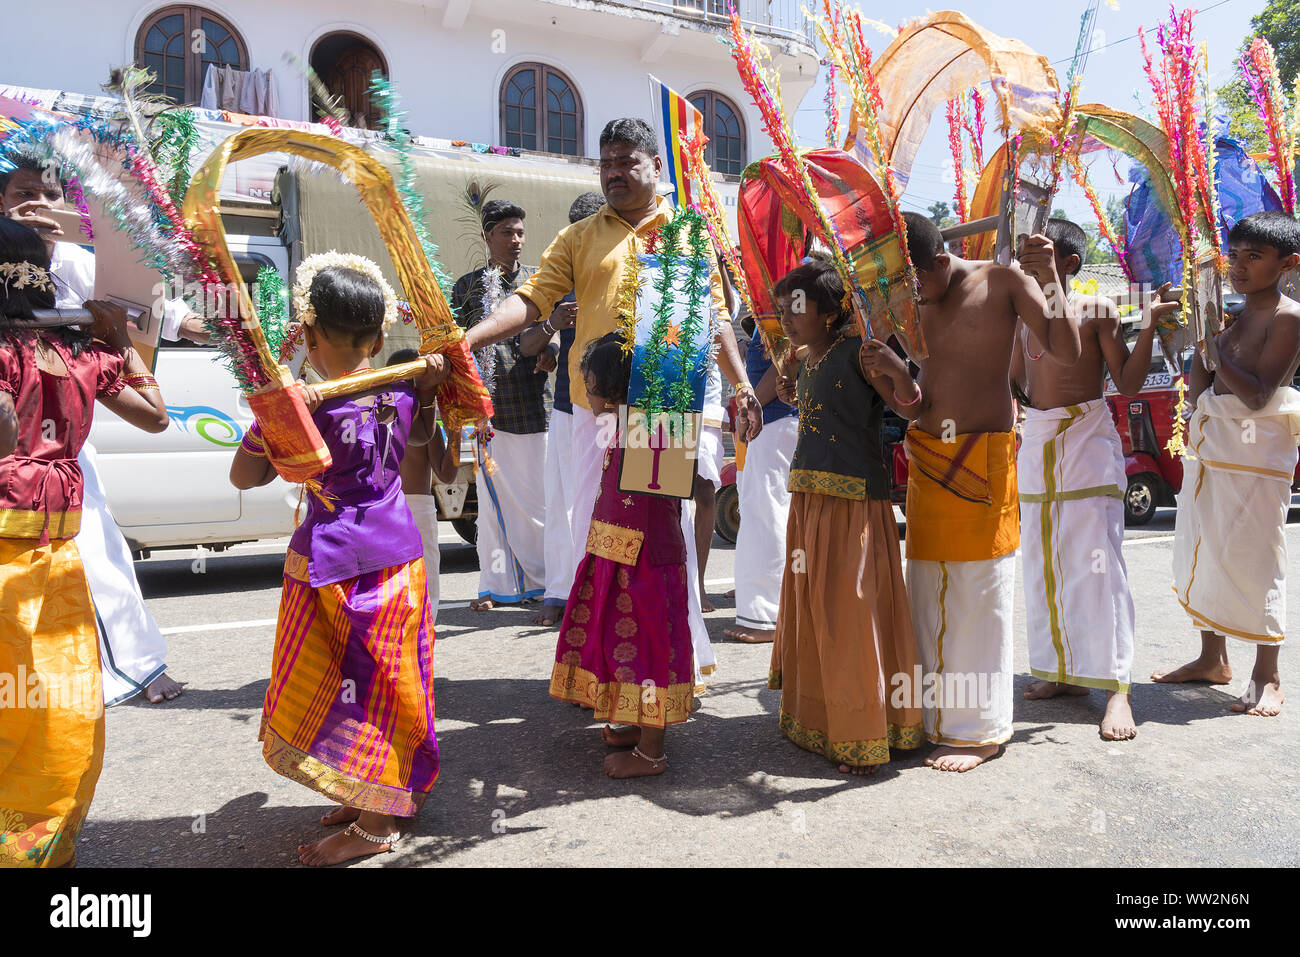 Pussellawa, Sri Lanka, 20.03.2019: Hindu Festival der Thaipusam - Body Piercing Rituale unter dem Blut Mond. Anhänger durch die Stadt paradieren. Stockfoto